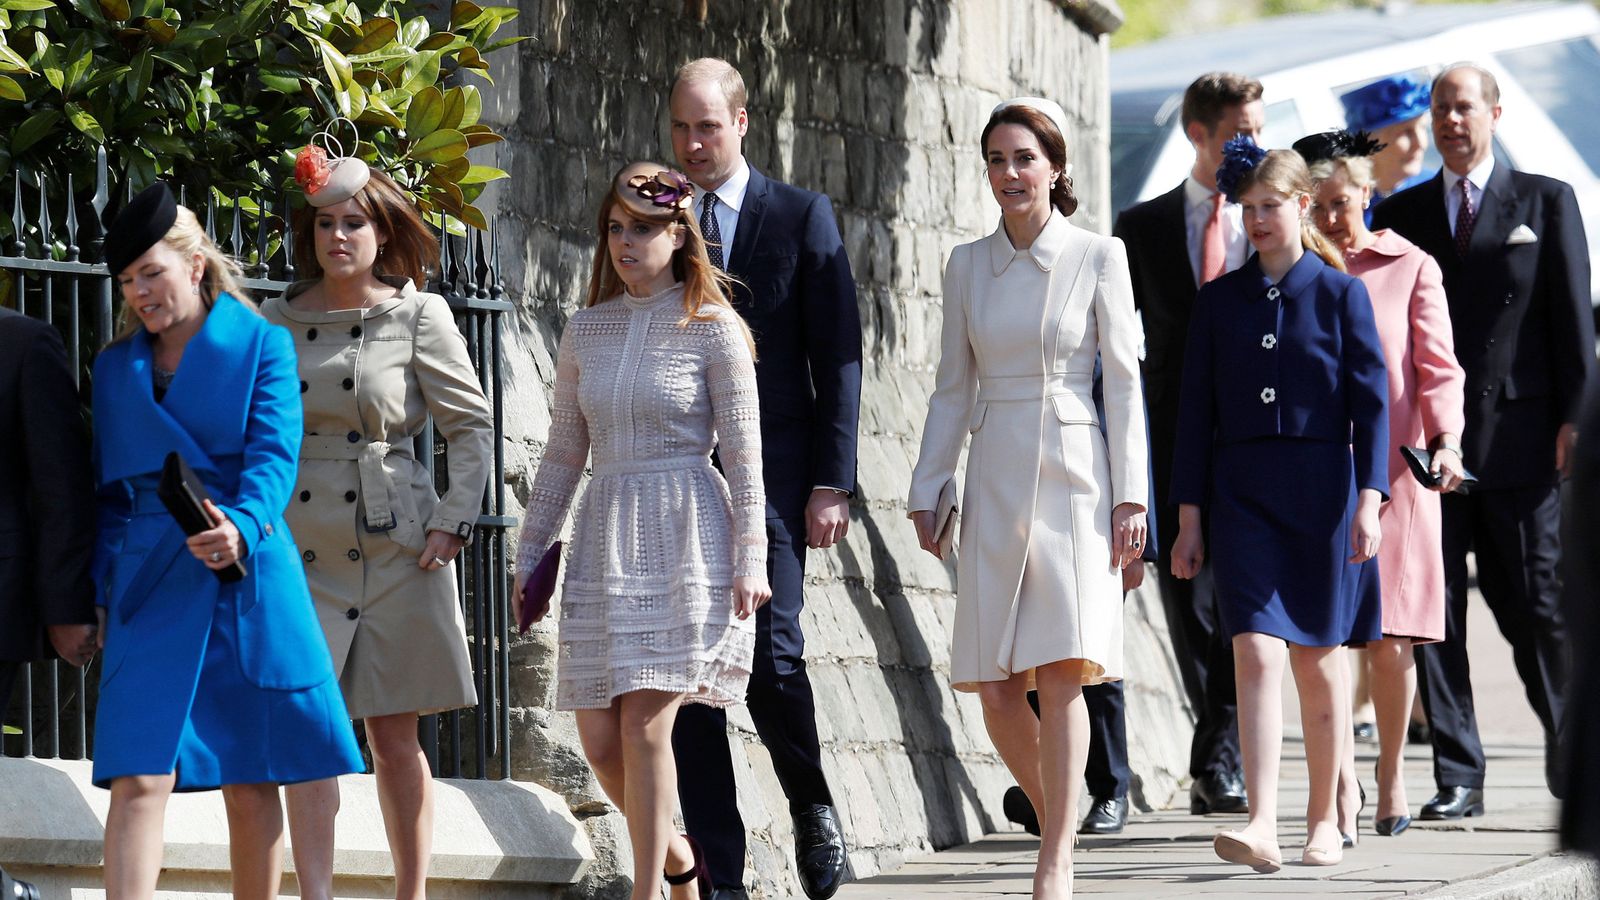 Royals attend Easter service at Windsor UK News Sky News